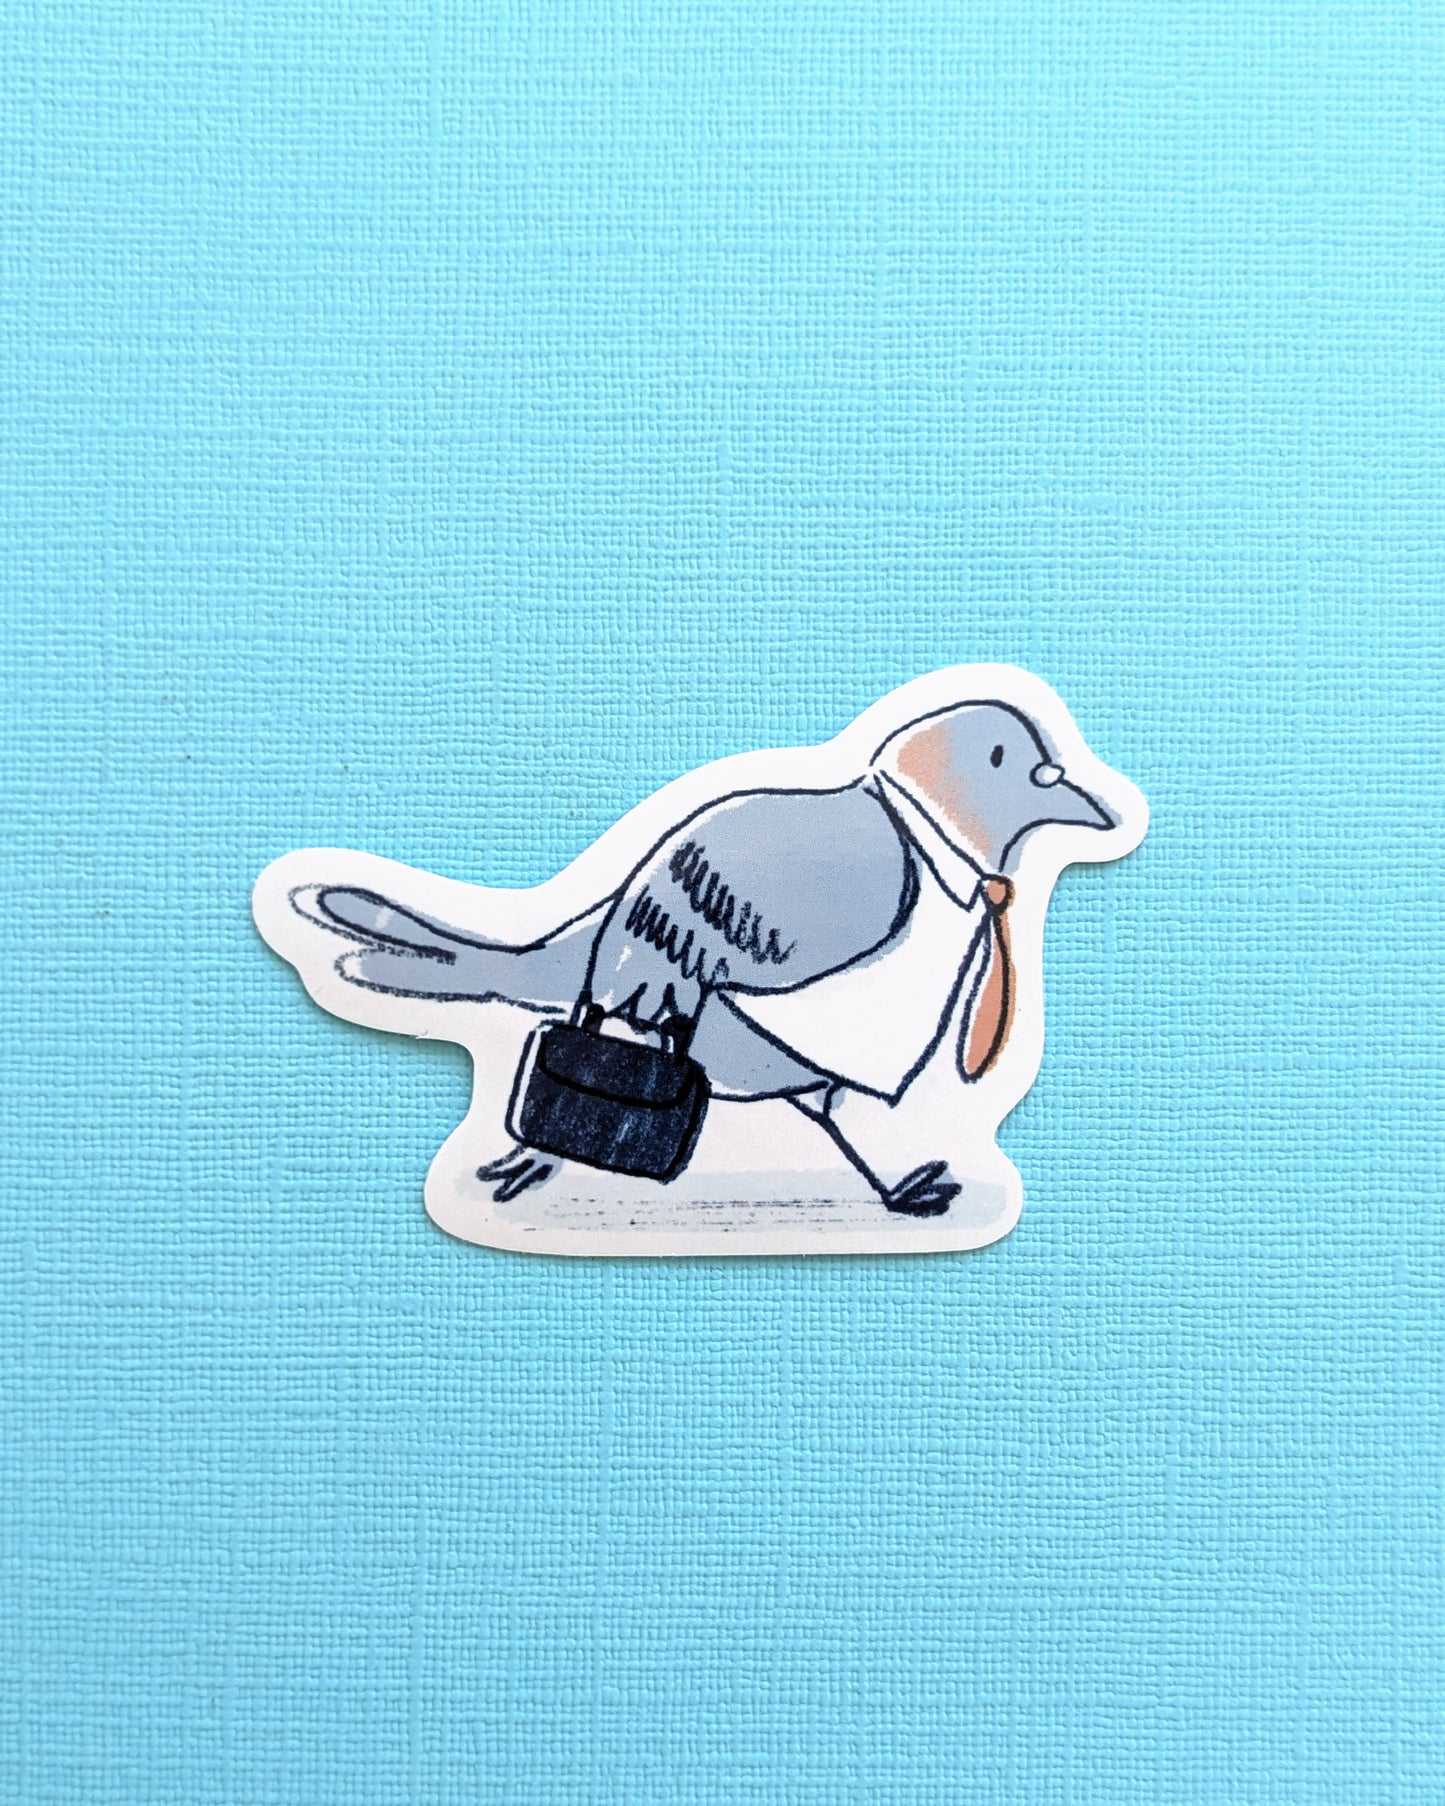 Mr Pigeon Off to Work - Vinyl Sticker